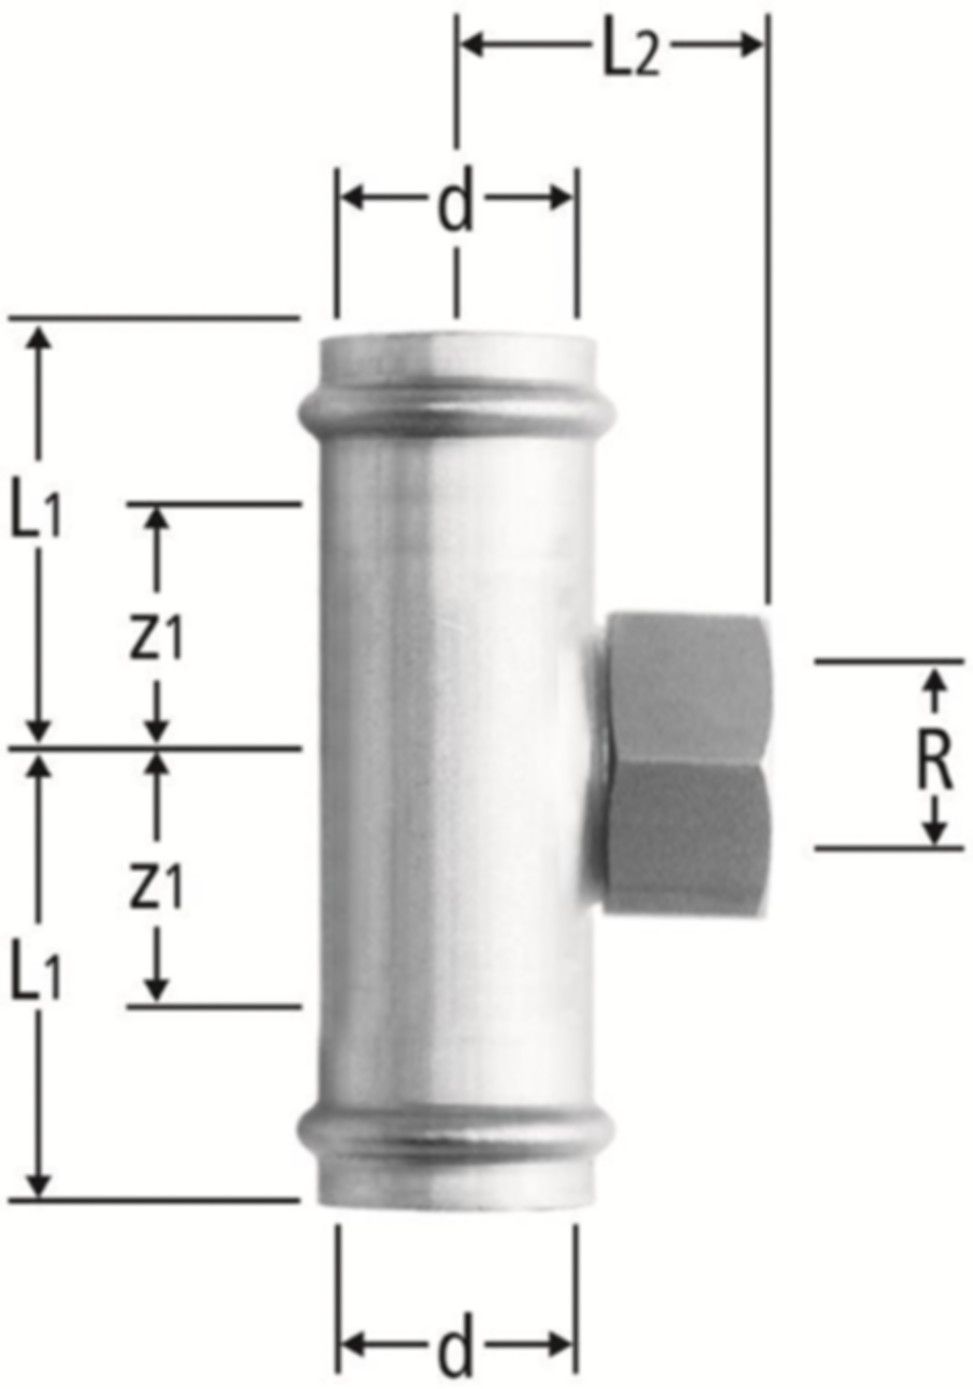 T-Stück m/IG 35 x 11/4" x 35 mm 80019.26 mit Schiebemuffe - Nussbaum-Optipress-Inox-Fittings